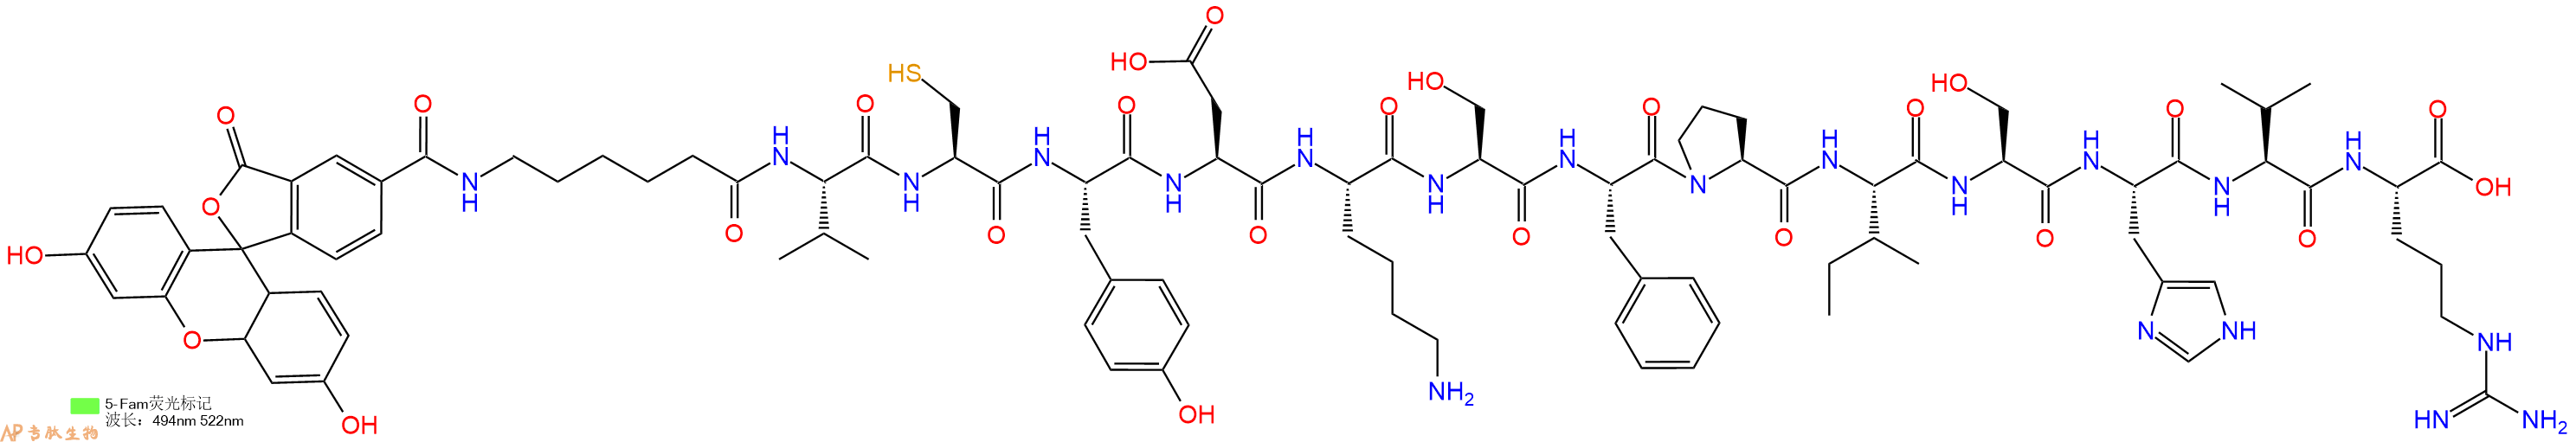 专肽生物产品5FAM-Ahx-Val-Cys-Tyr-Asp-Lys-Ser-Phe-Pro-Ile-Ser-H